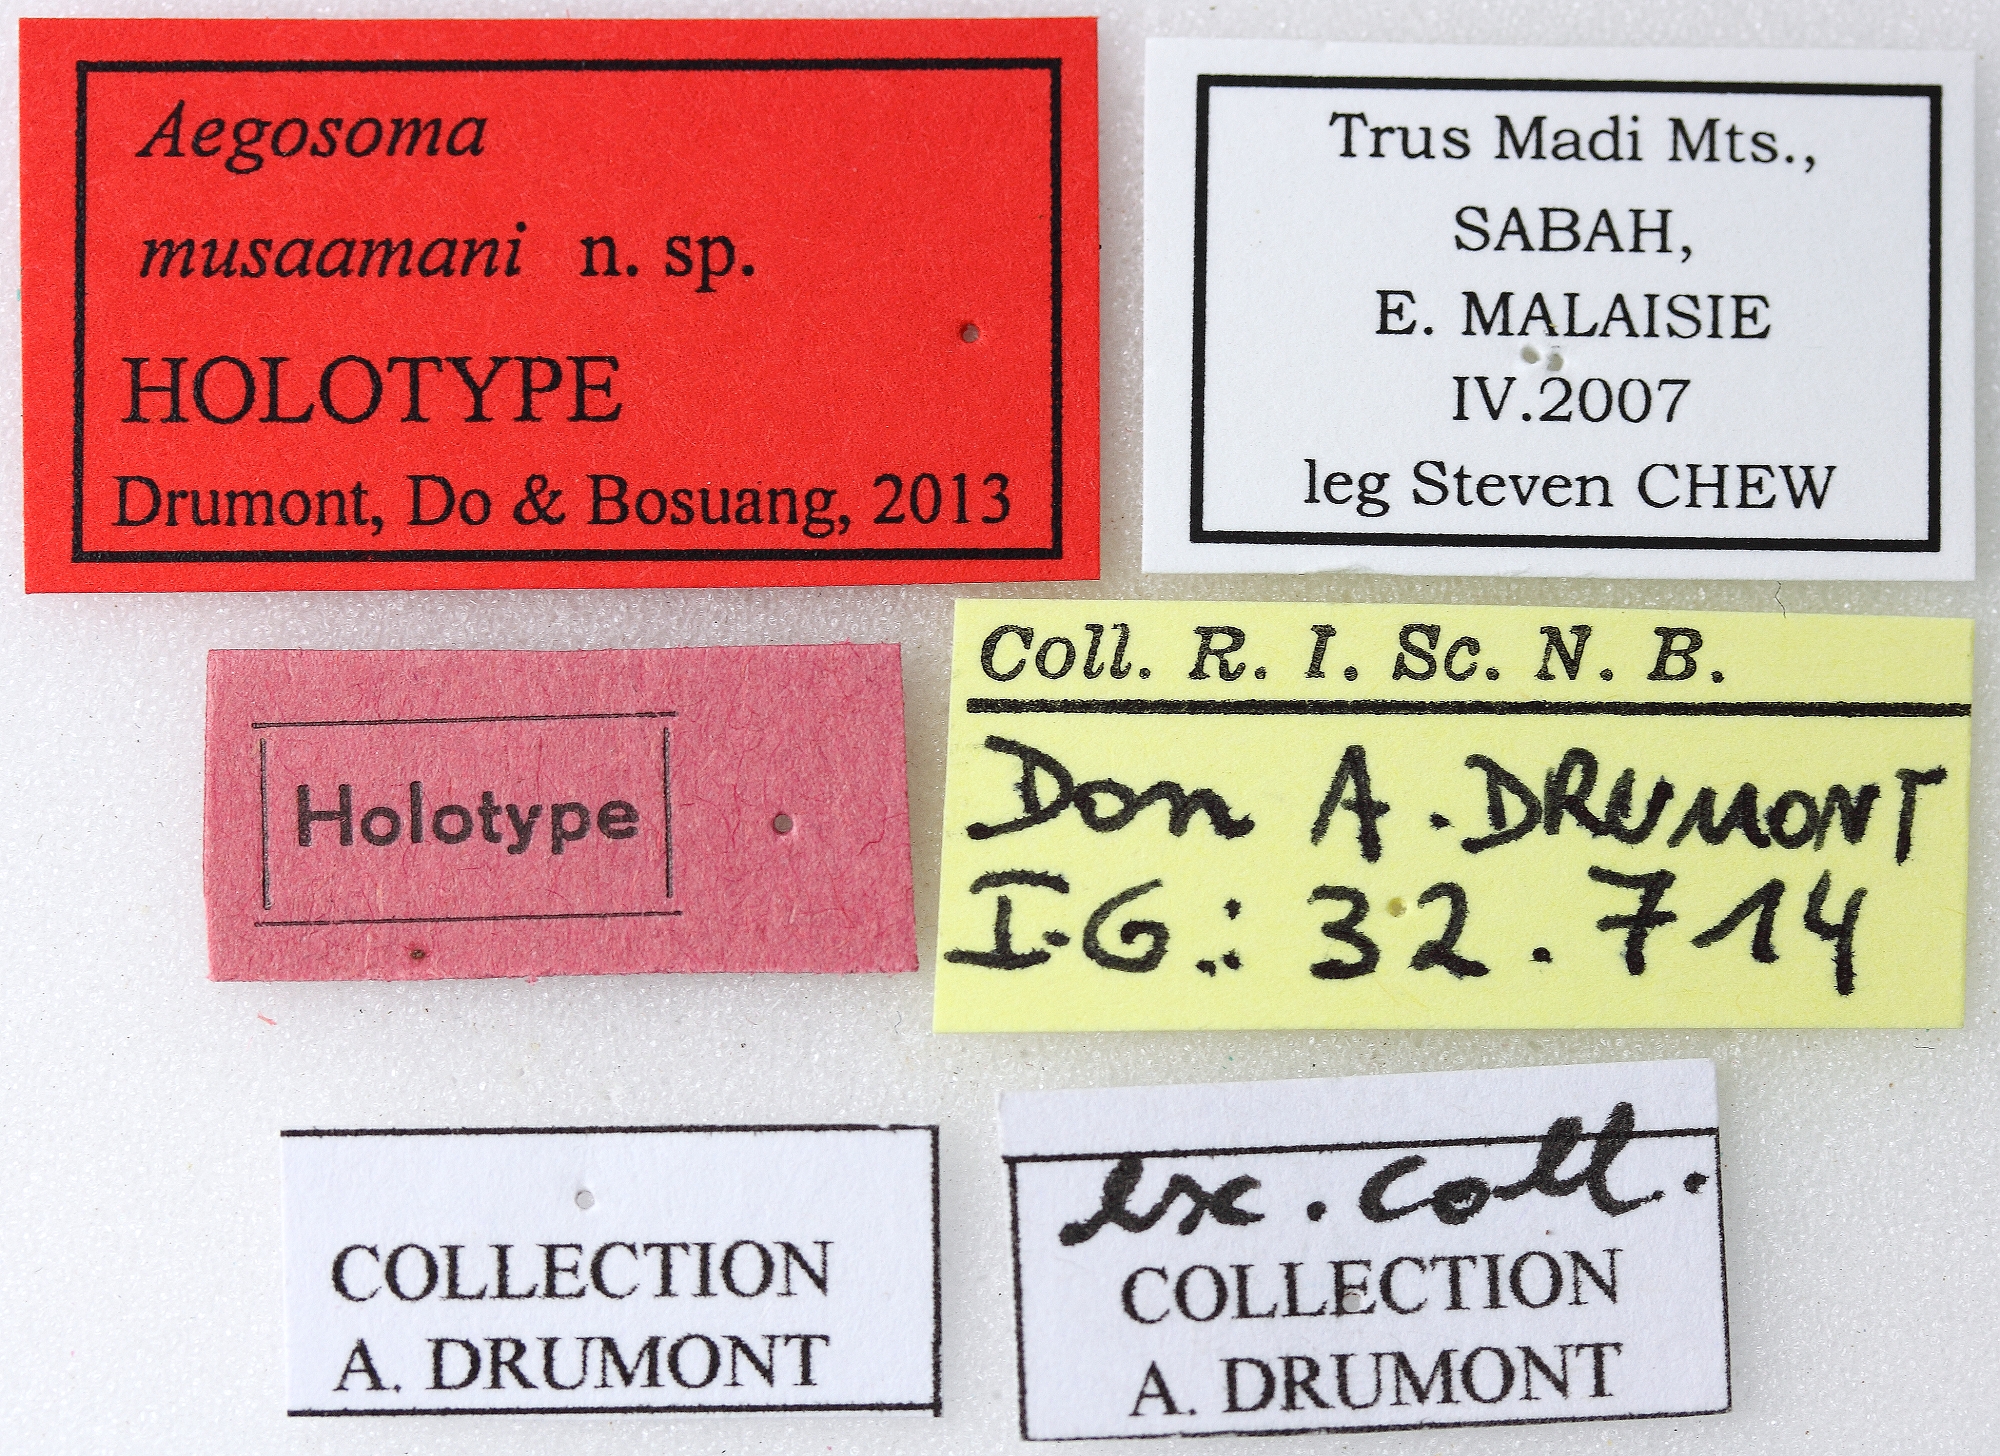 Aegosoma musaamani 01 00 Holotype X 049 BRUS 201405.jpg